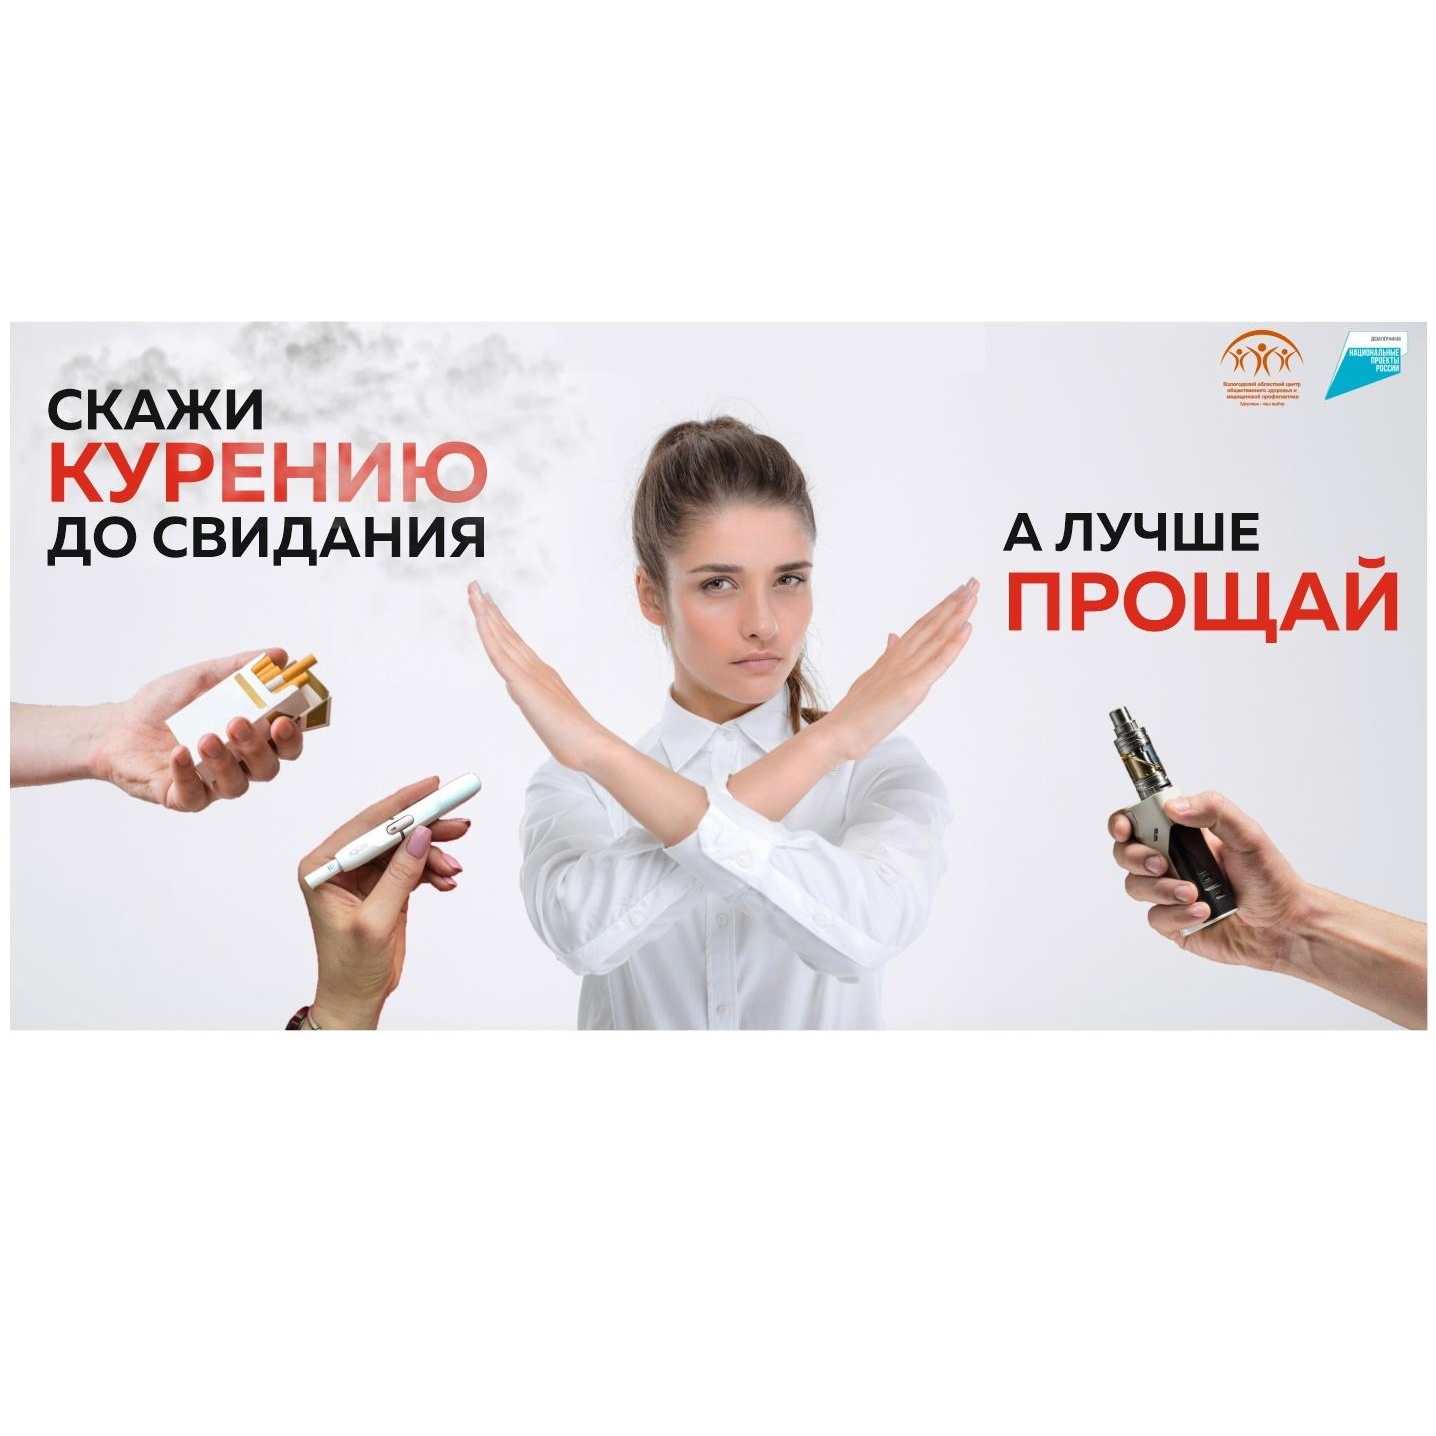 В соответствии с планом тематических недель Минздрава РФ с 29 мая по 4 июня проходит Неделя отказа от табака (в рамках Всемирного дня отказа от табака - 31 мая).